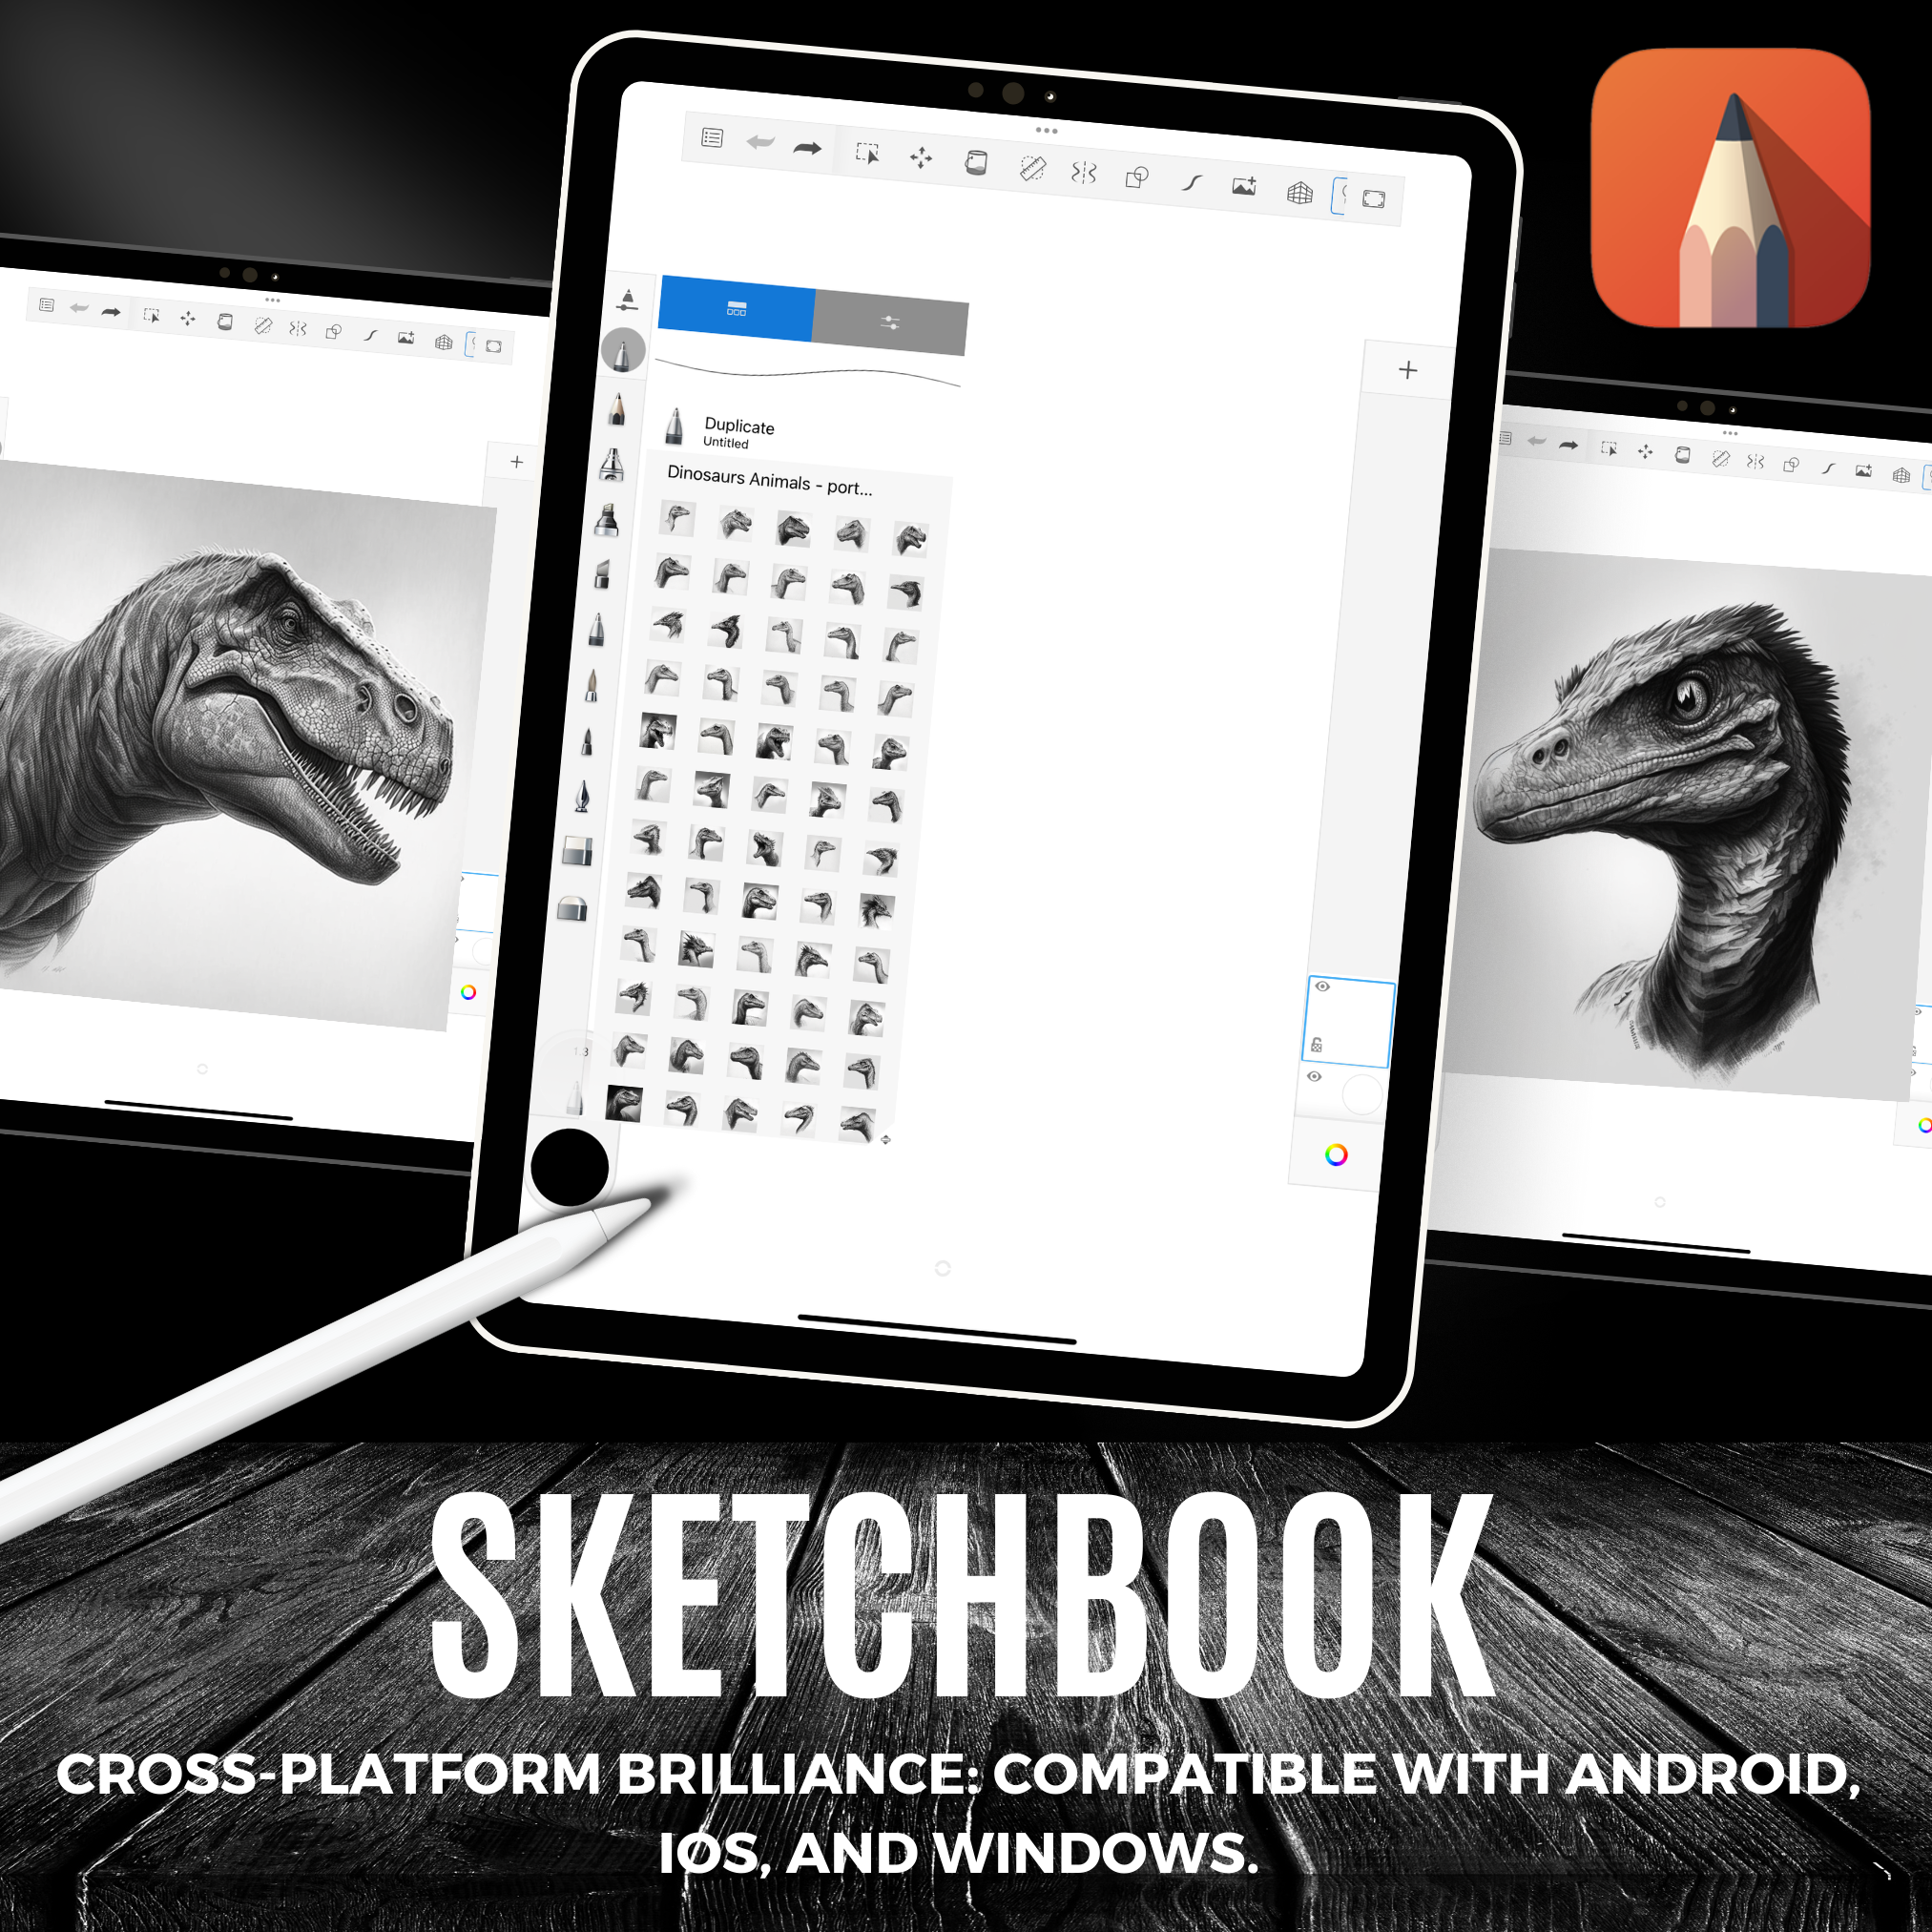 Colección de diseños de referencia digital de dinosaurios: 100 imágenes de Procreate y Sketchbook